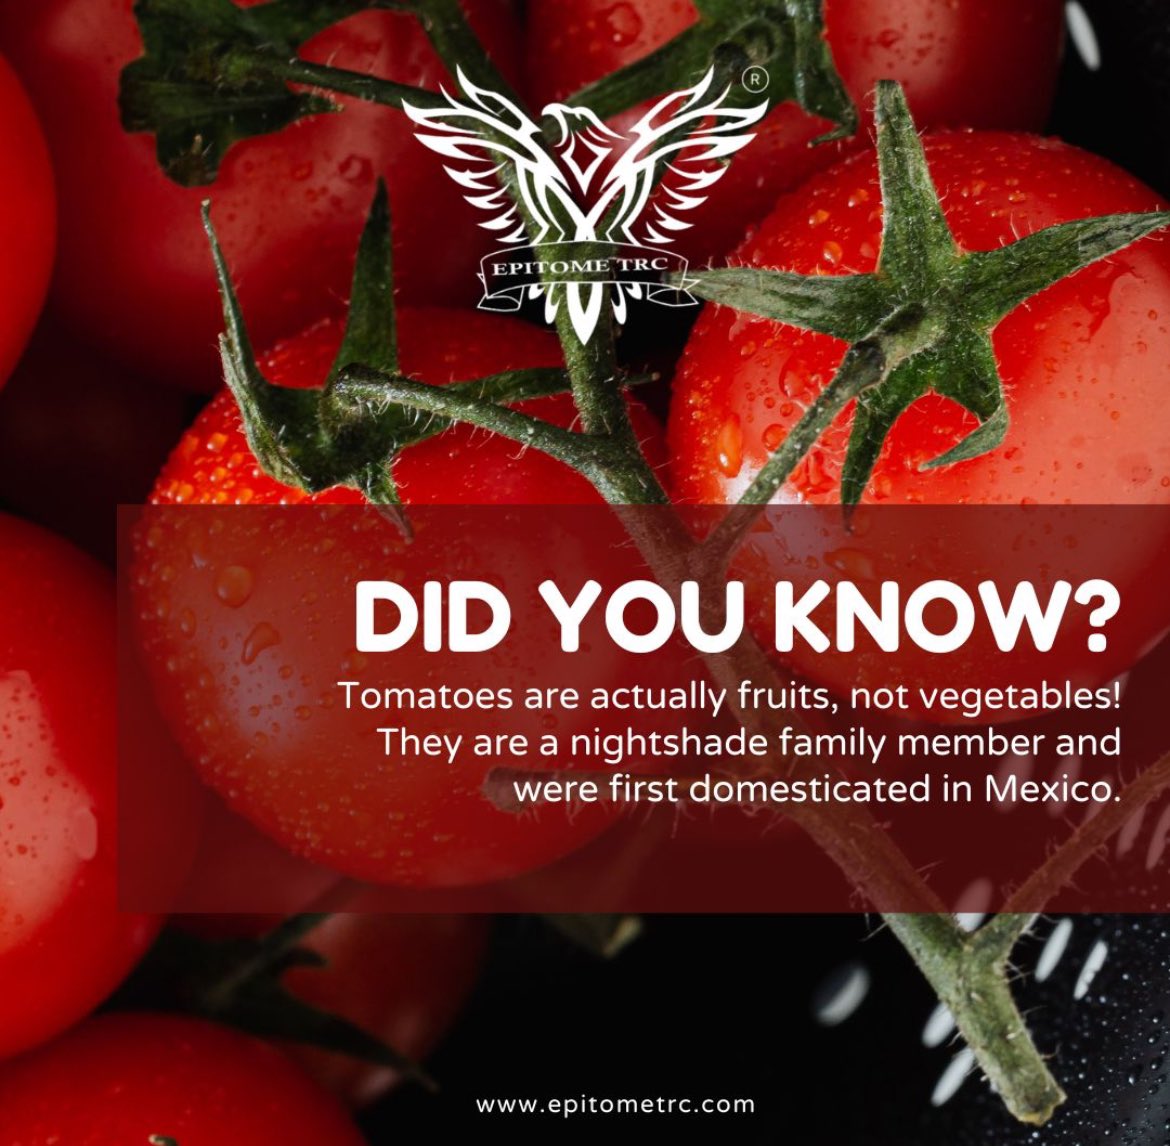 #didyouknow #tomato #mexico #fruits #vegetables #epitometrc